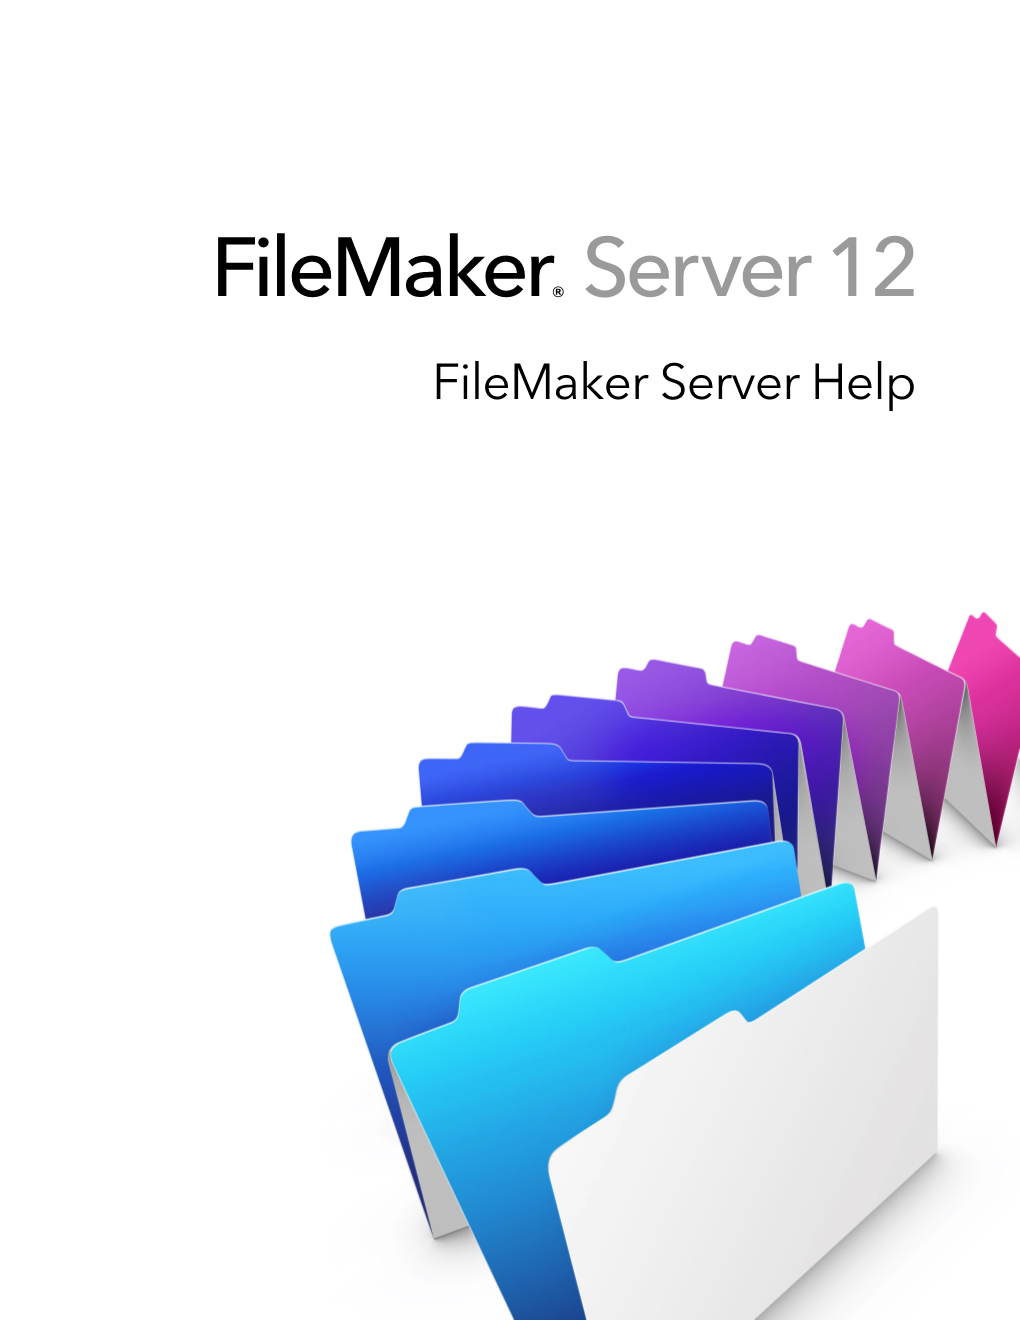 Filemaker Server Help © 2010 - 2012 Filemaker, Inc